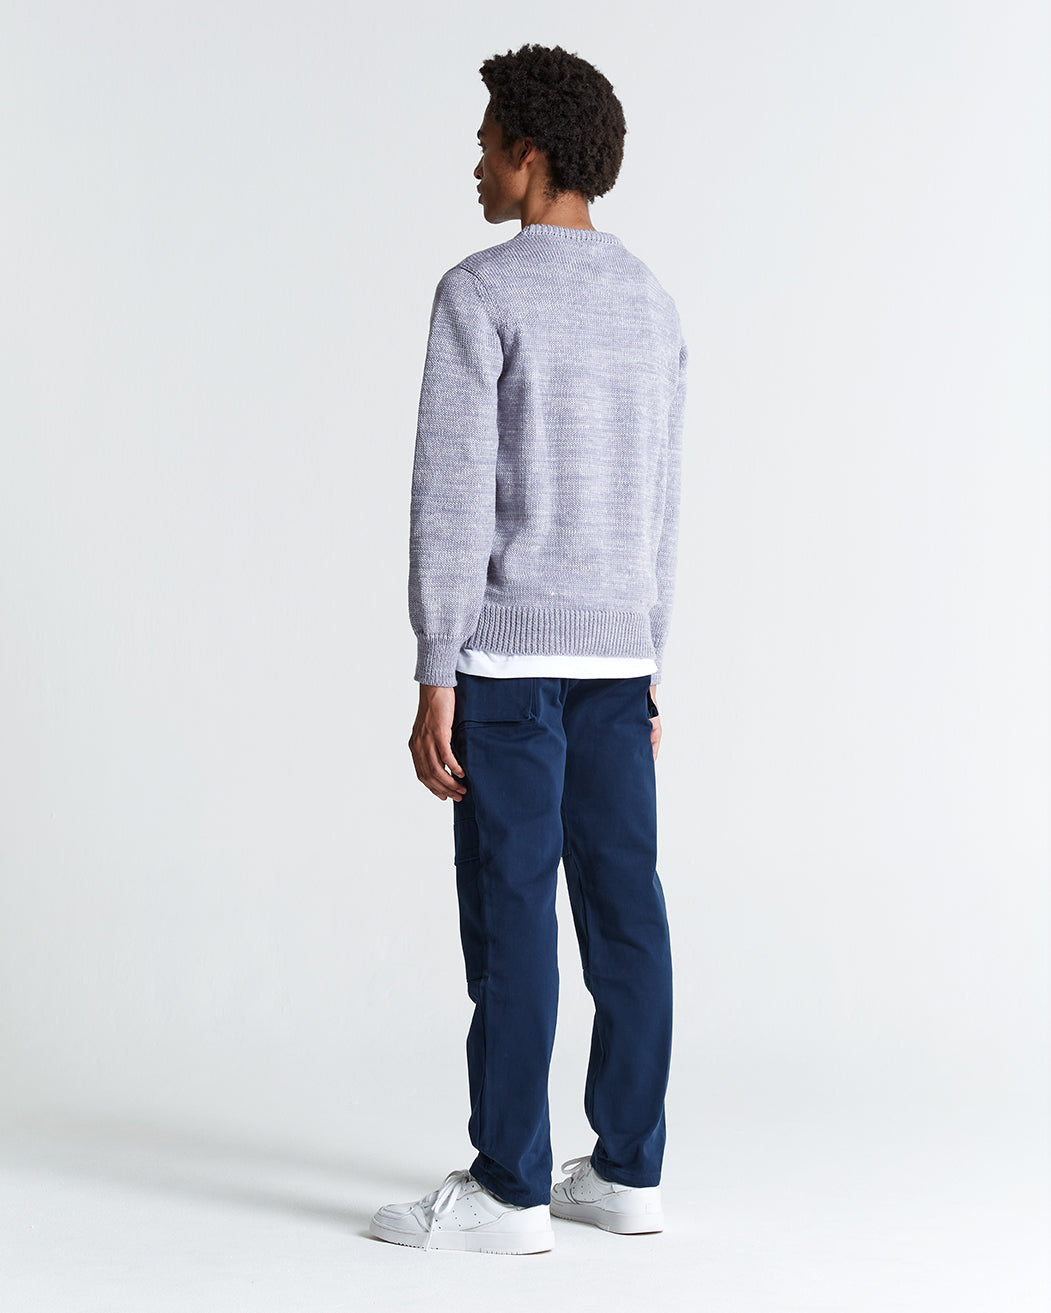 1kg Wool & Linen Sweater in Gull & Ecru